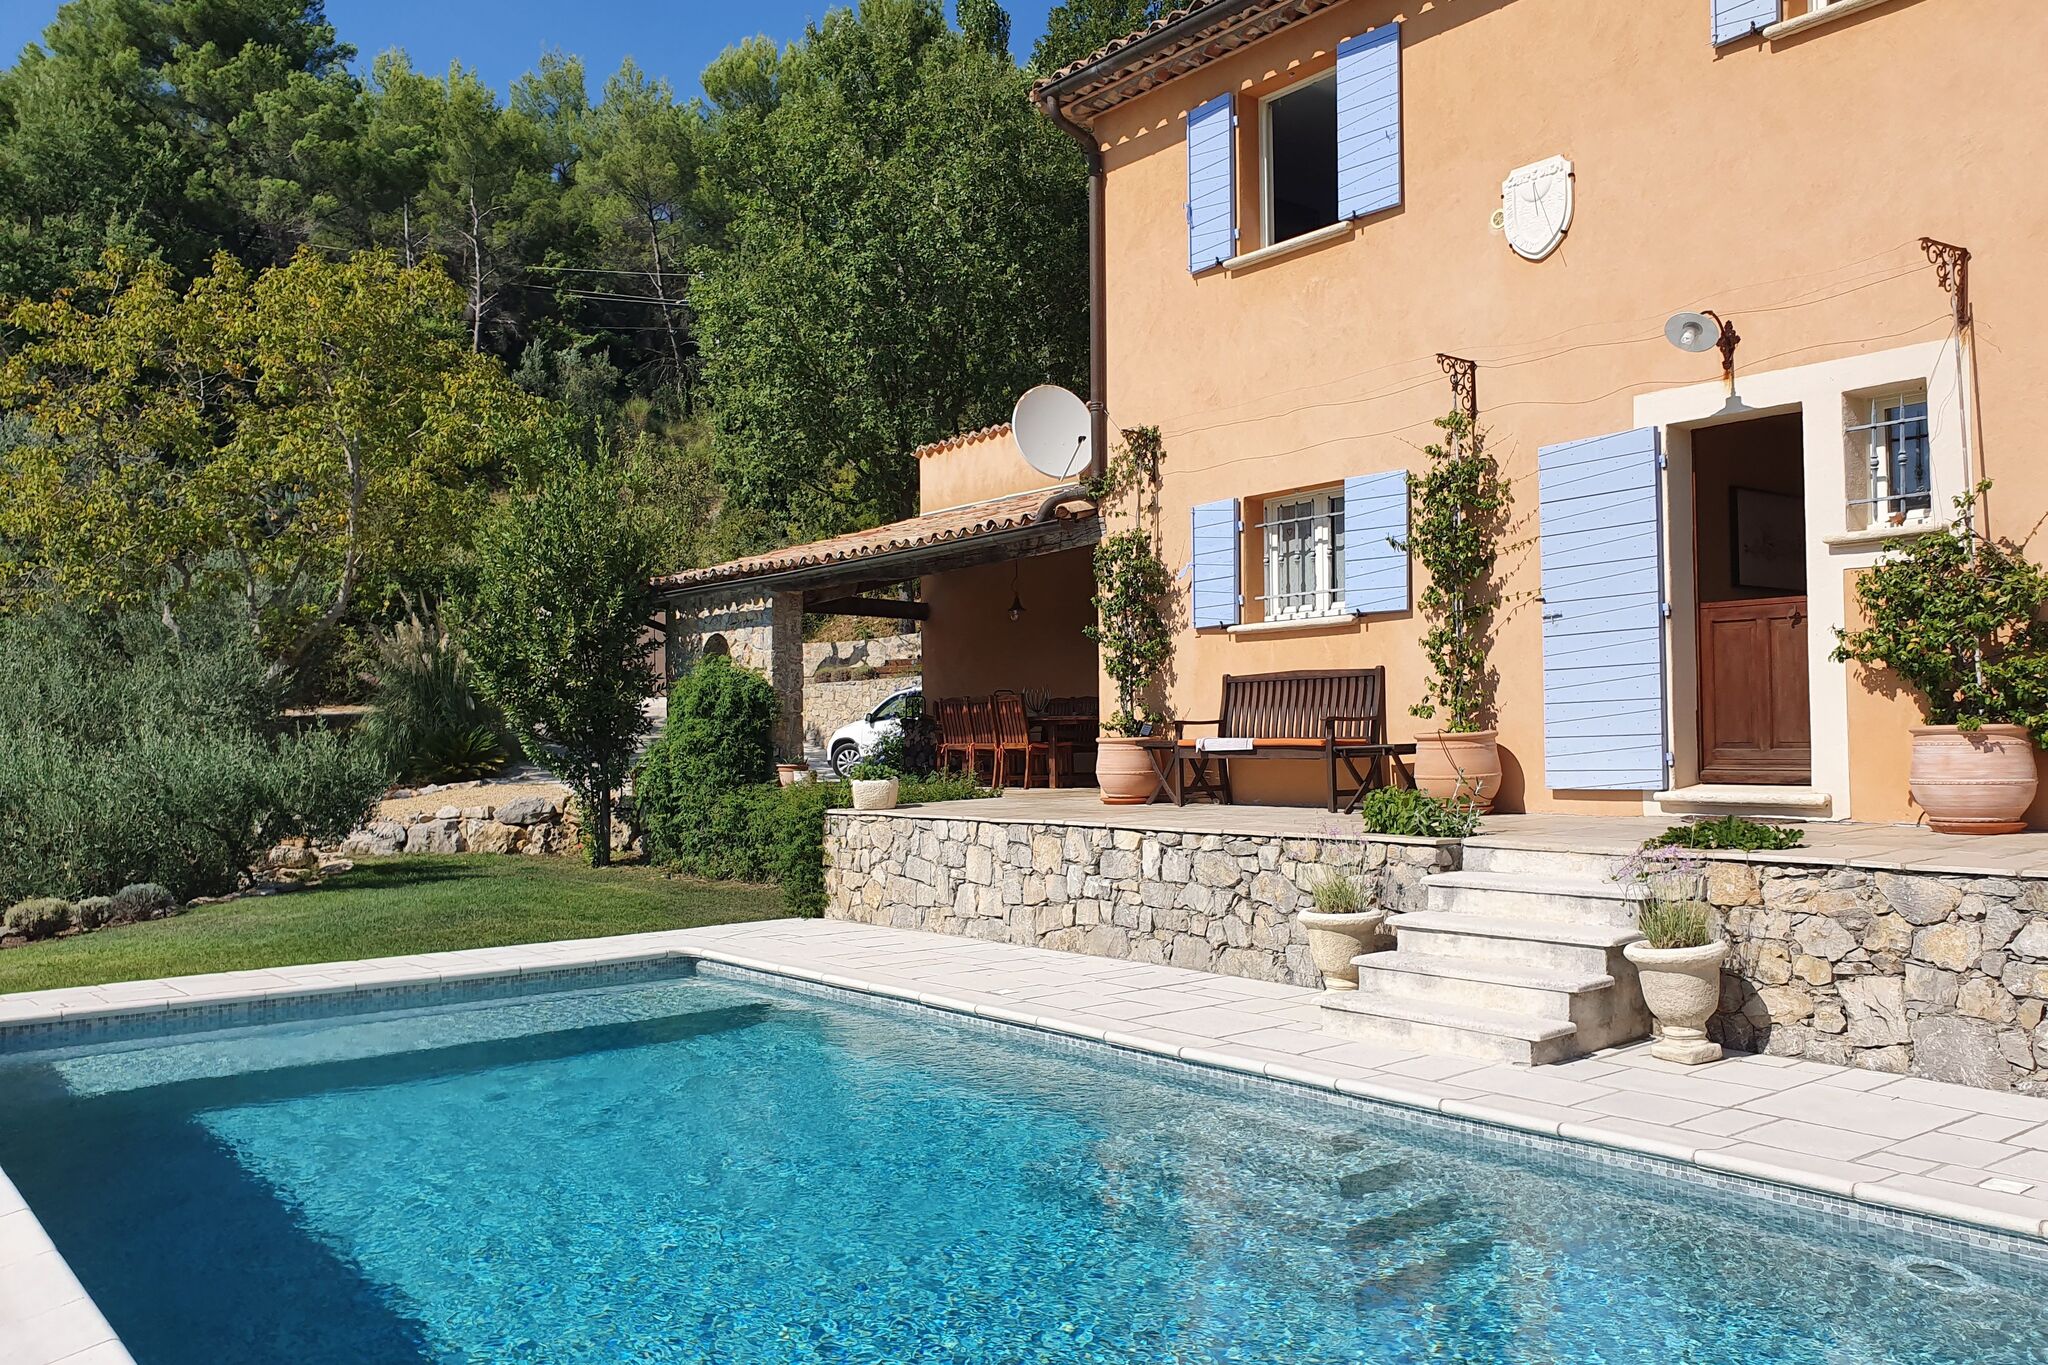 Maison de vacances pittoresque à Seillans avec piscine privée